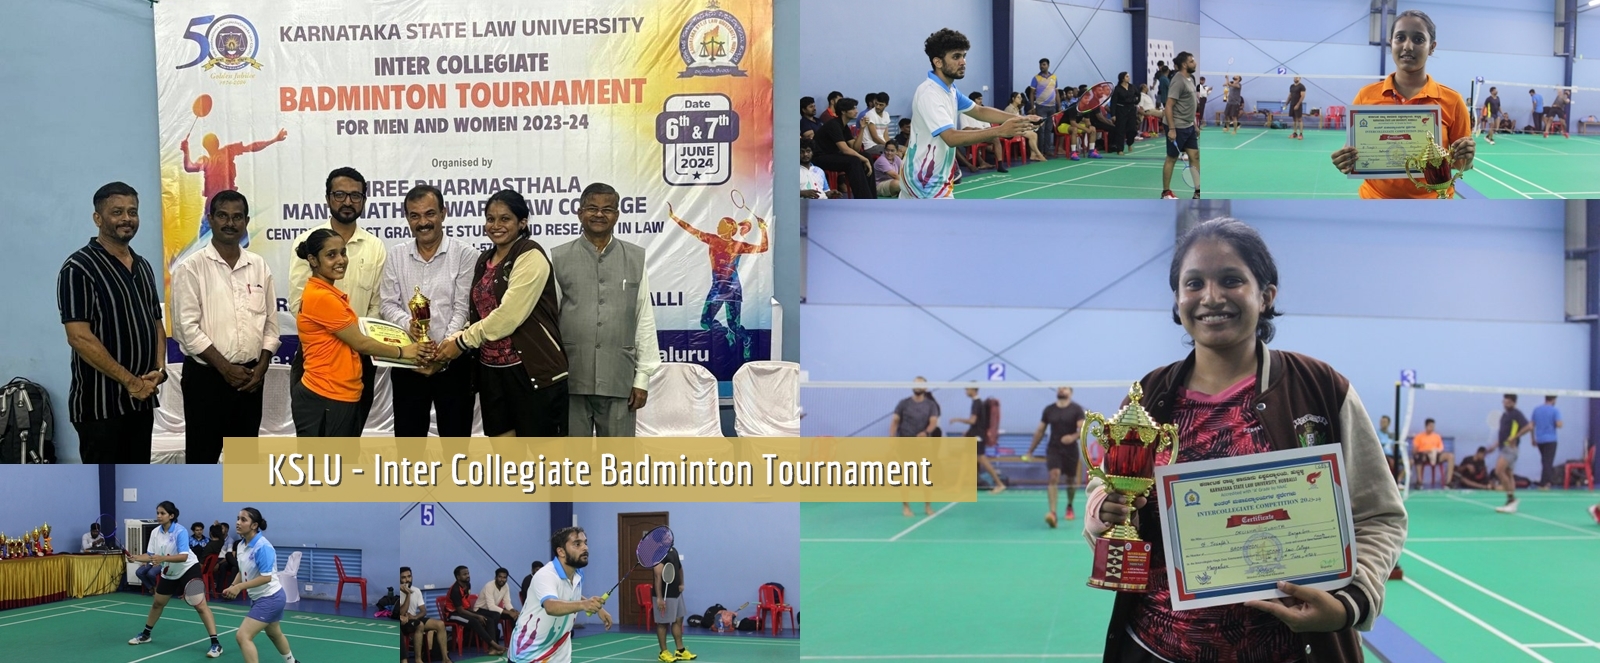 KSLU - Inter Collegiate Badminton Tournament